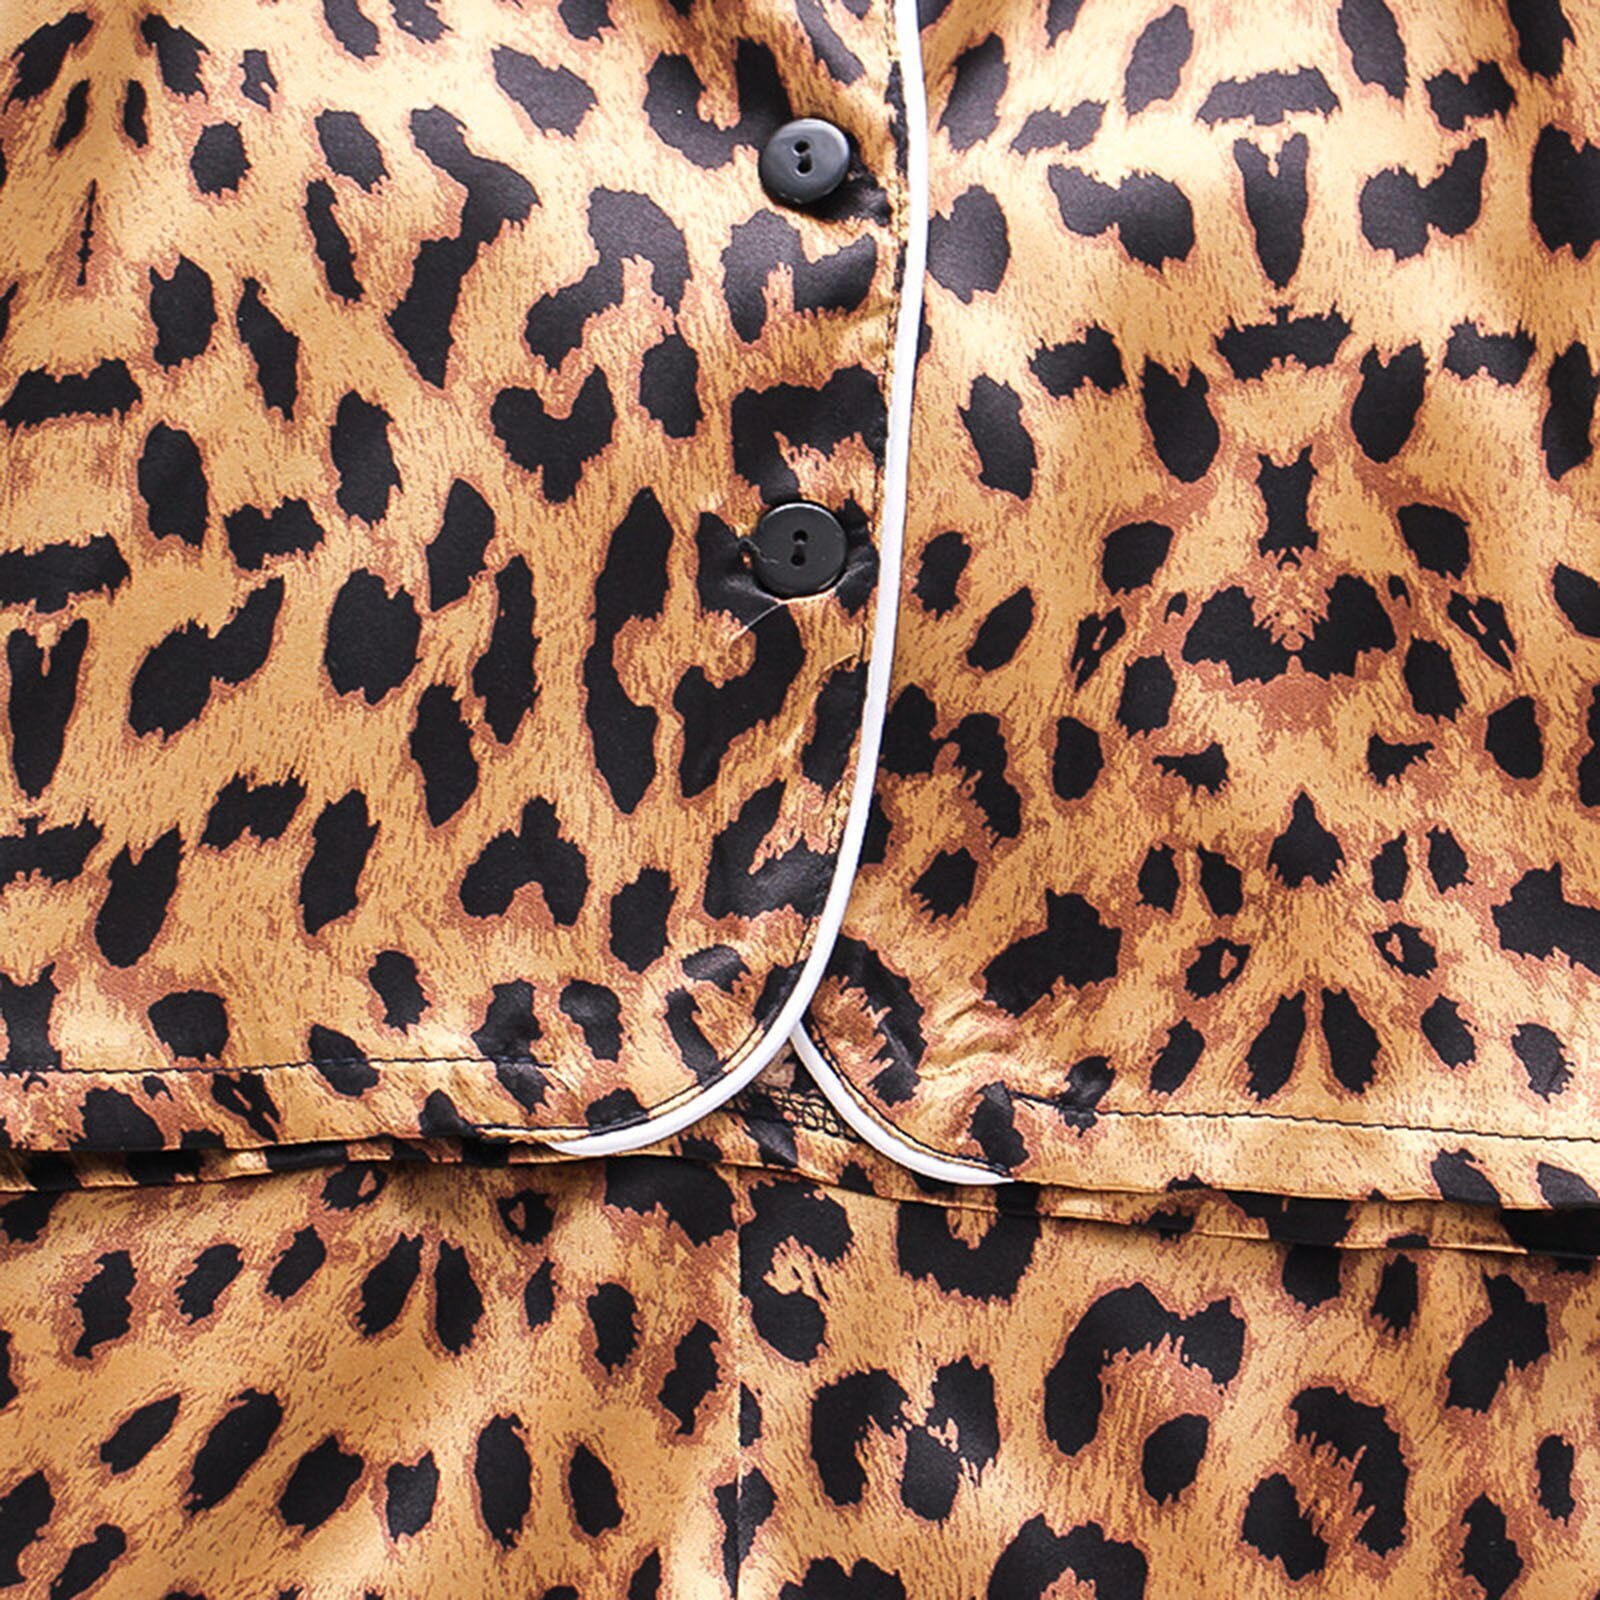 Leopard Pring Satijn Kids Pyjama Sets Peuter Kids Baby Jongens Meisjes Knop Pyjama Nachtkleding Tops Korte Outfits Kids Zijden Pyjama